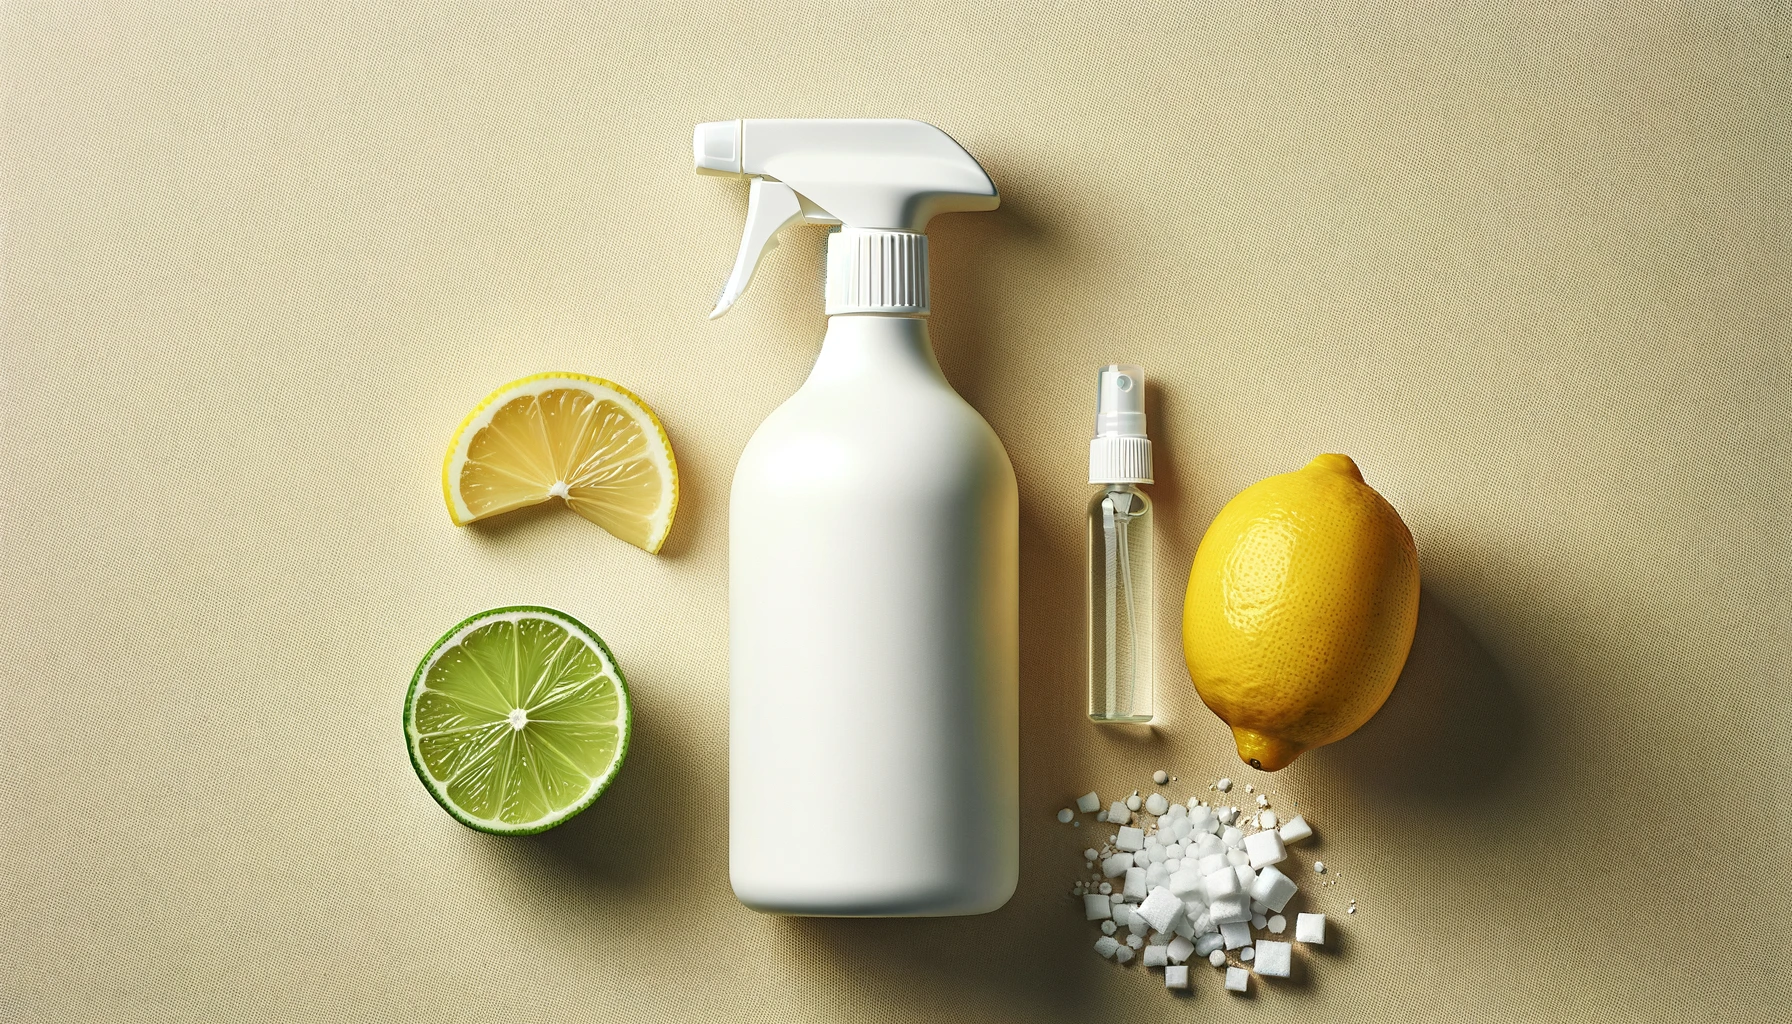 uso de limón y bicarbonato para limpieza eco amigable